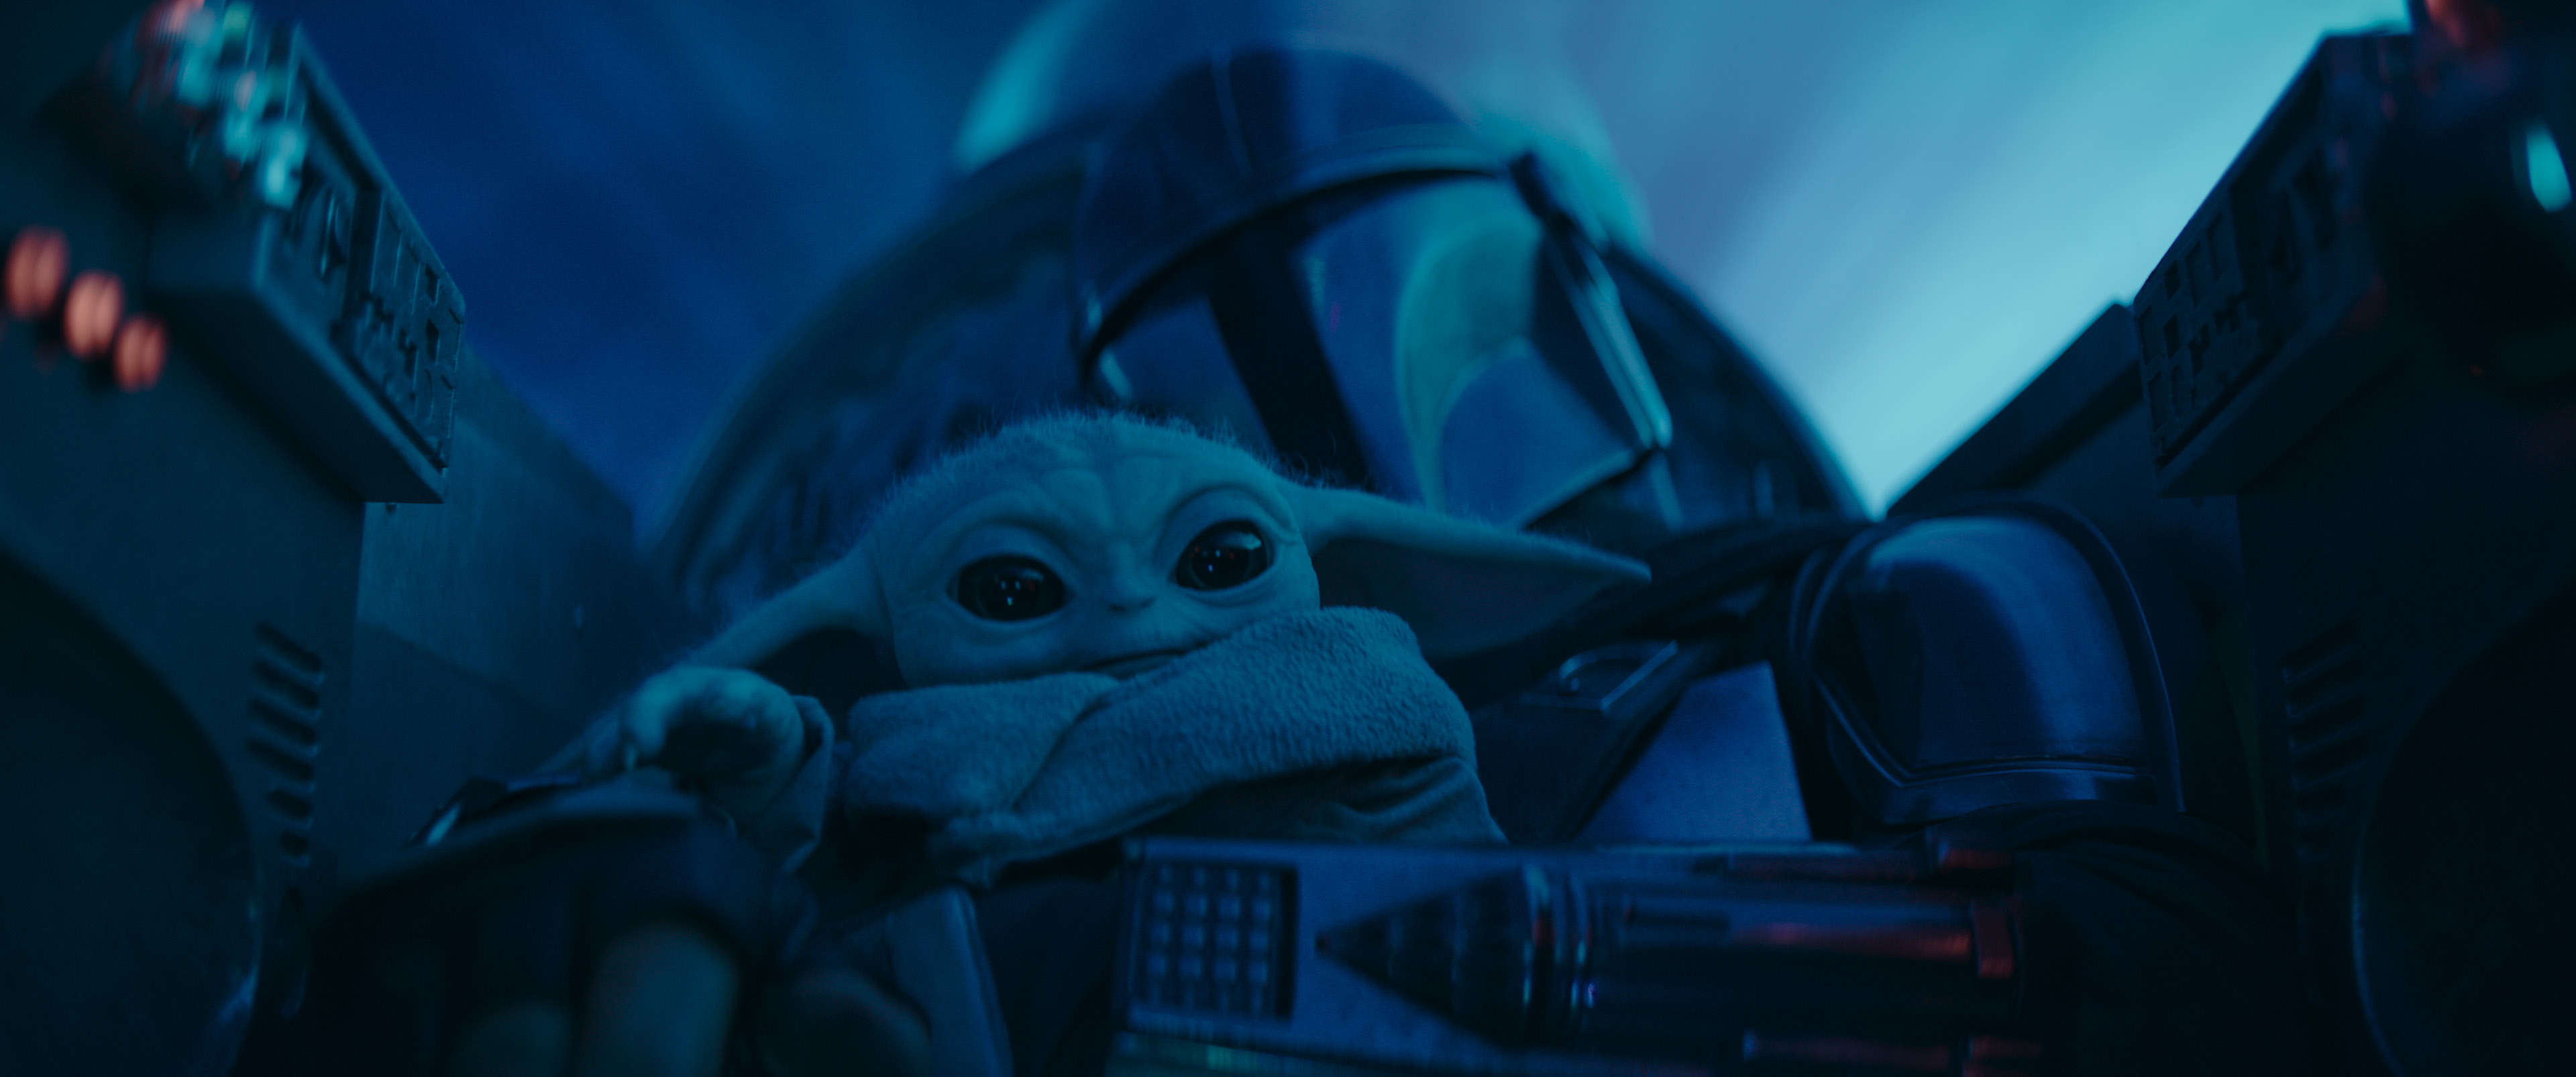 Mando in Begleitung von "Baby Yoda" an Bord seines Raumschiffs. Bild aus der Serie The Mandalorian auf Disney+